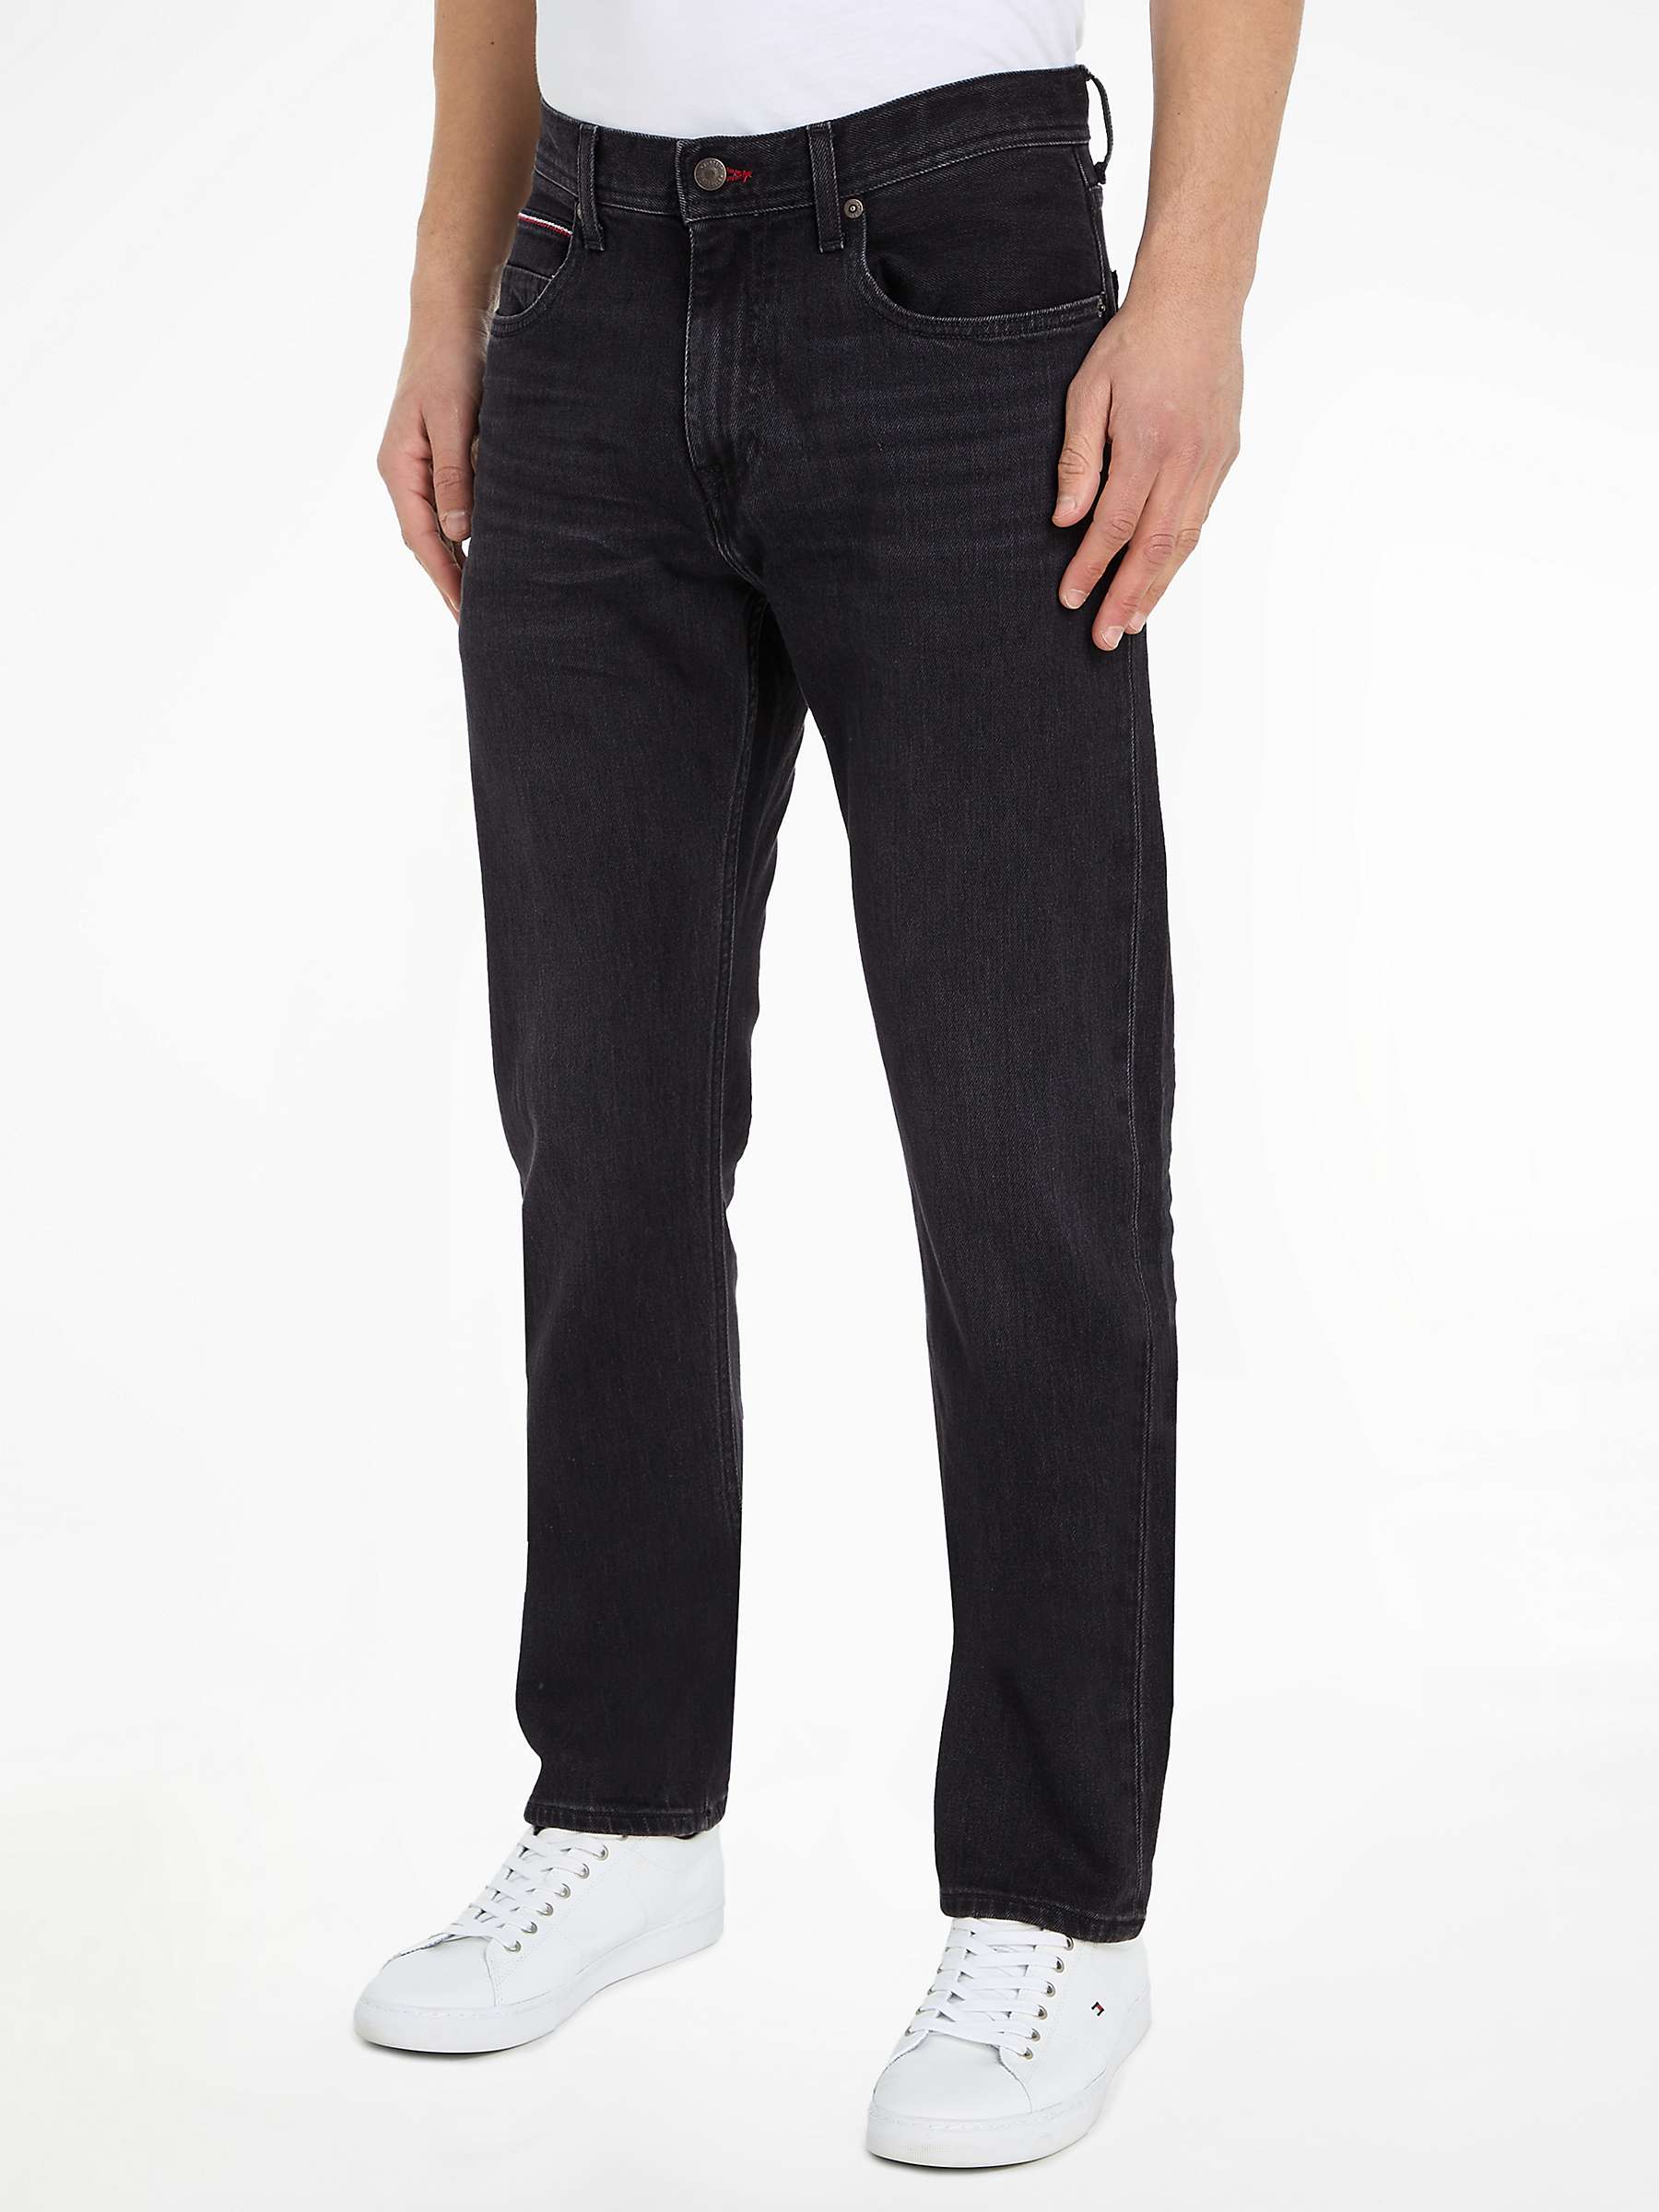 Buy Tommy Hilfiger Mercer Jeans, Black Online at johnlewis.com